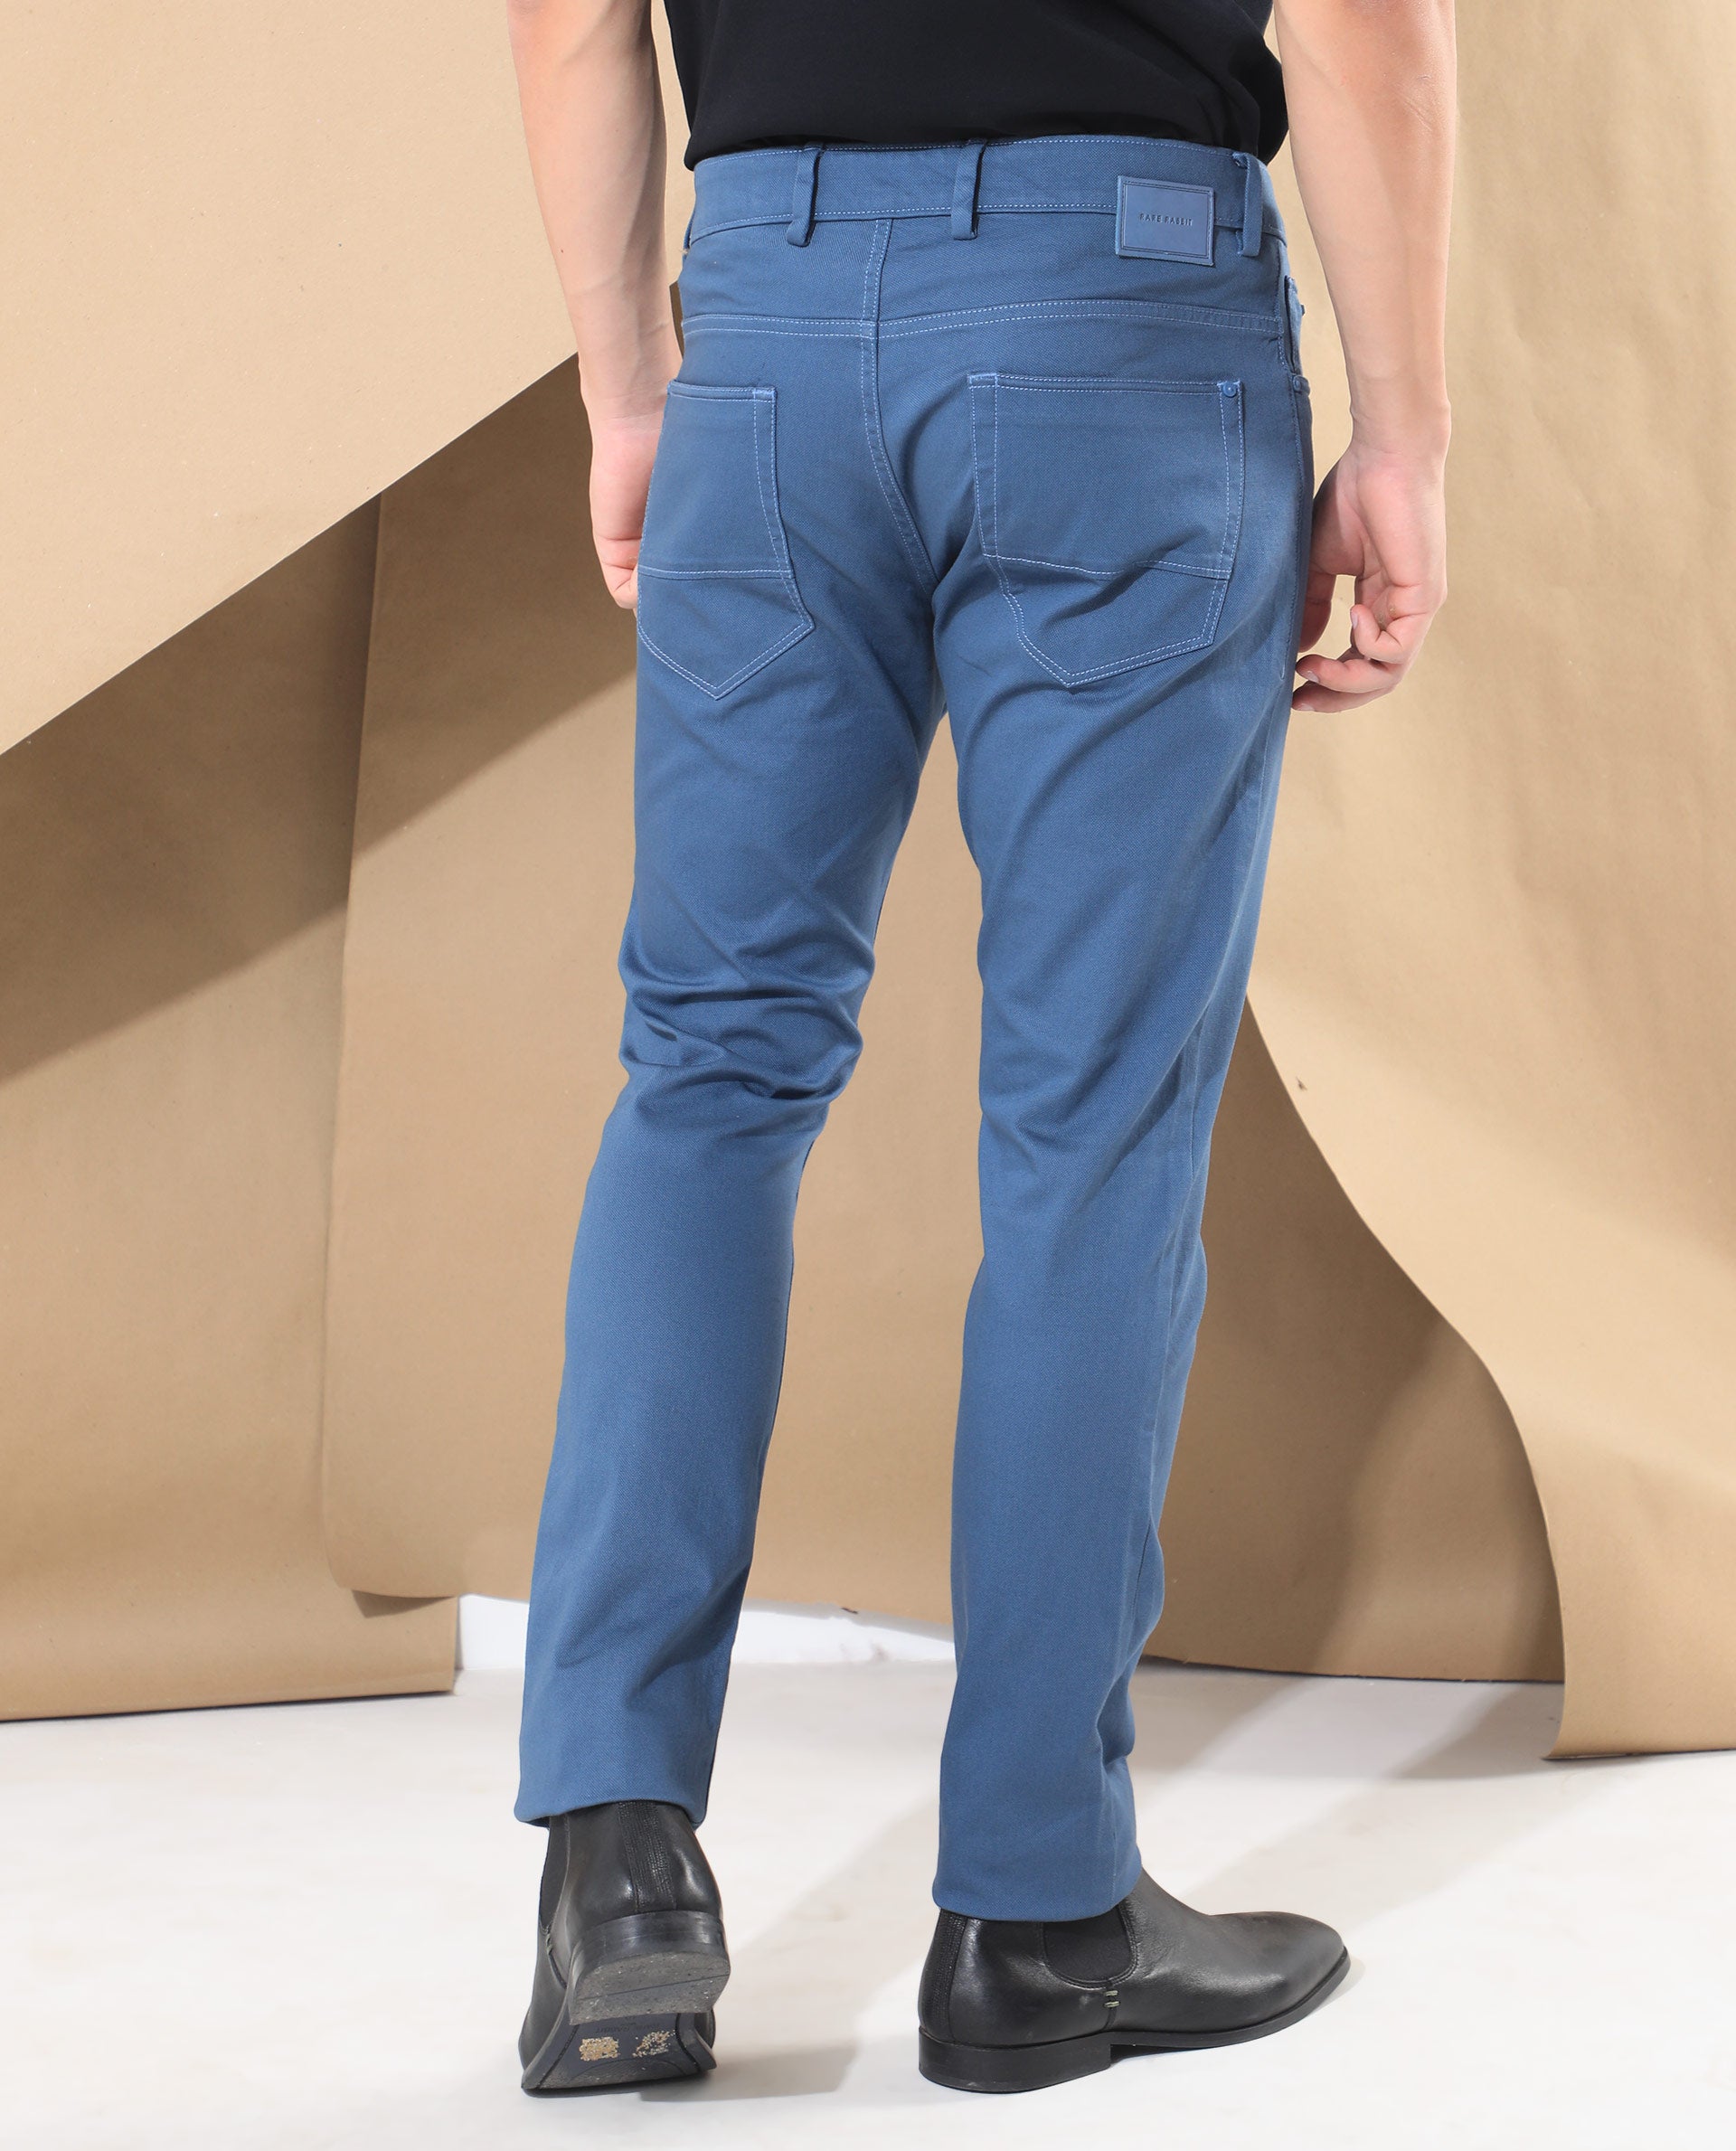 MANCREW Formal Trouser For Men  Sky Blue